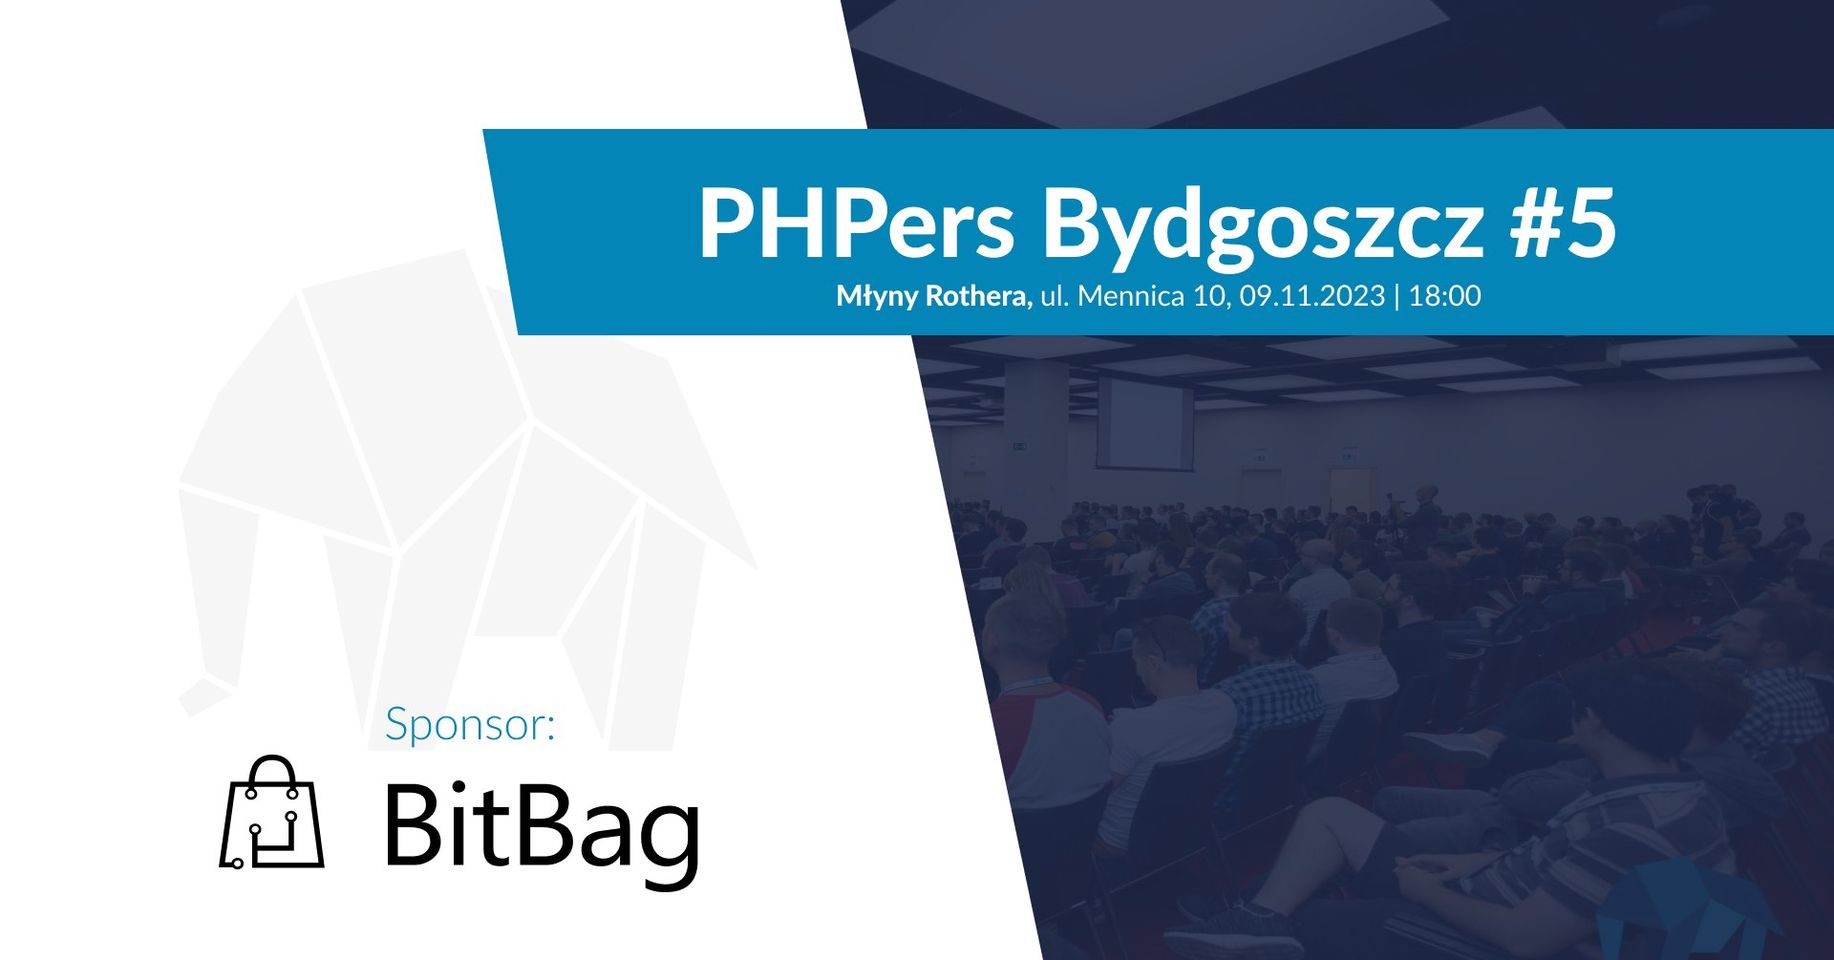 phpers-bydgoszcz-5-2023